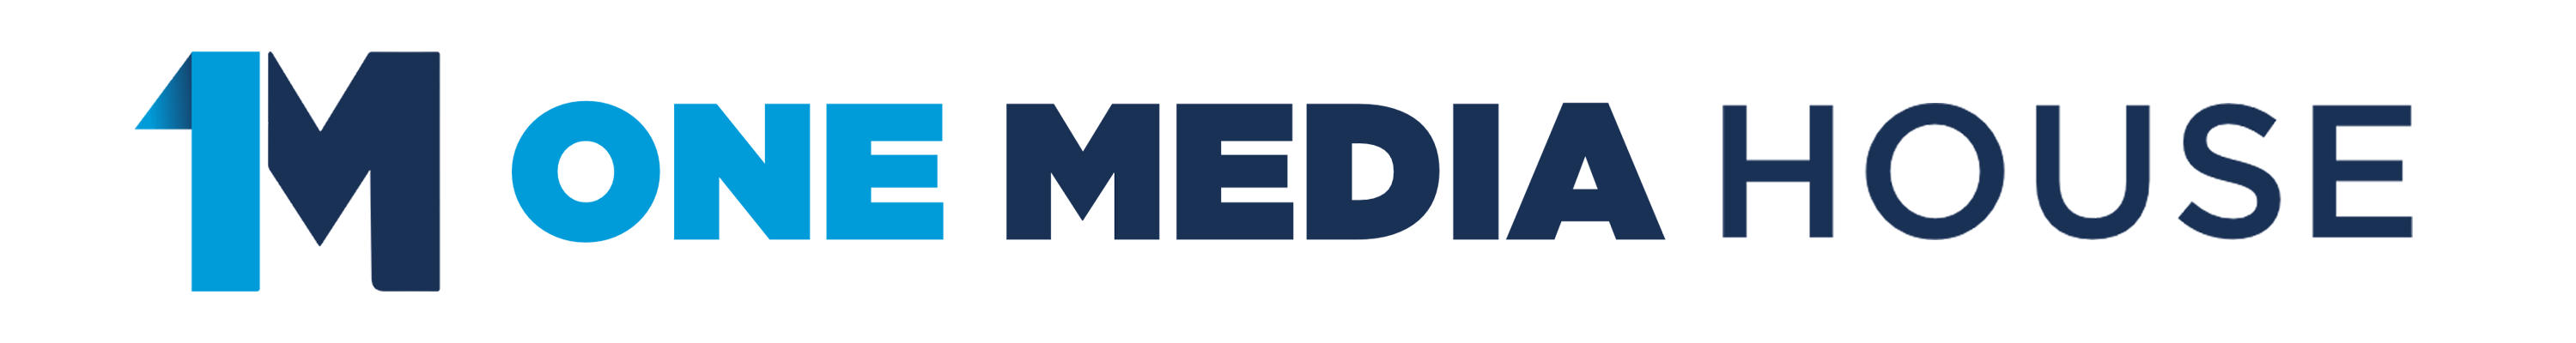 Media House Logo - One Media House | Modern Media for Marketing